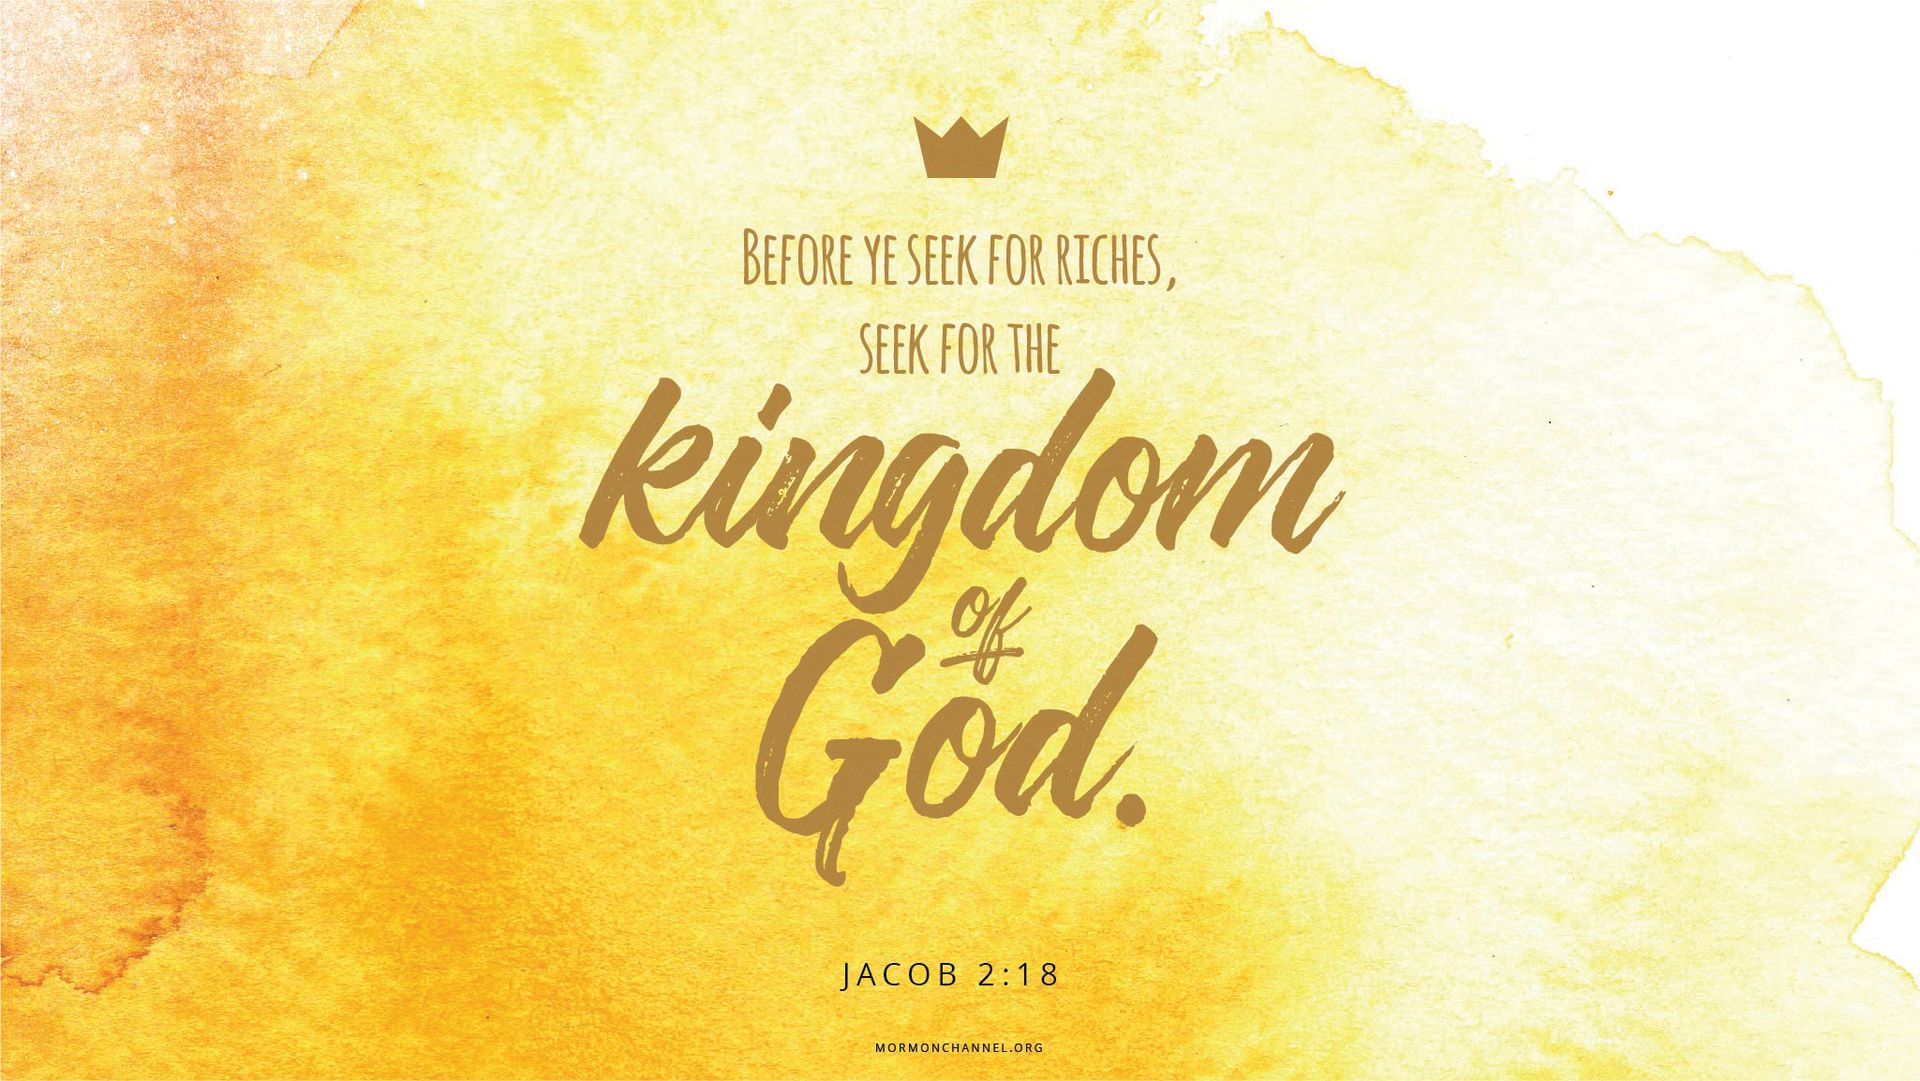 “Before ye seek for riches, seek ye for the kingdom of God.”—Jacob 2:18